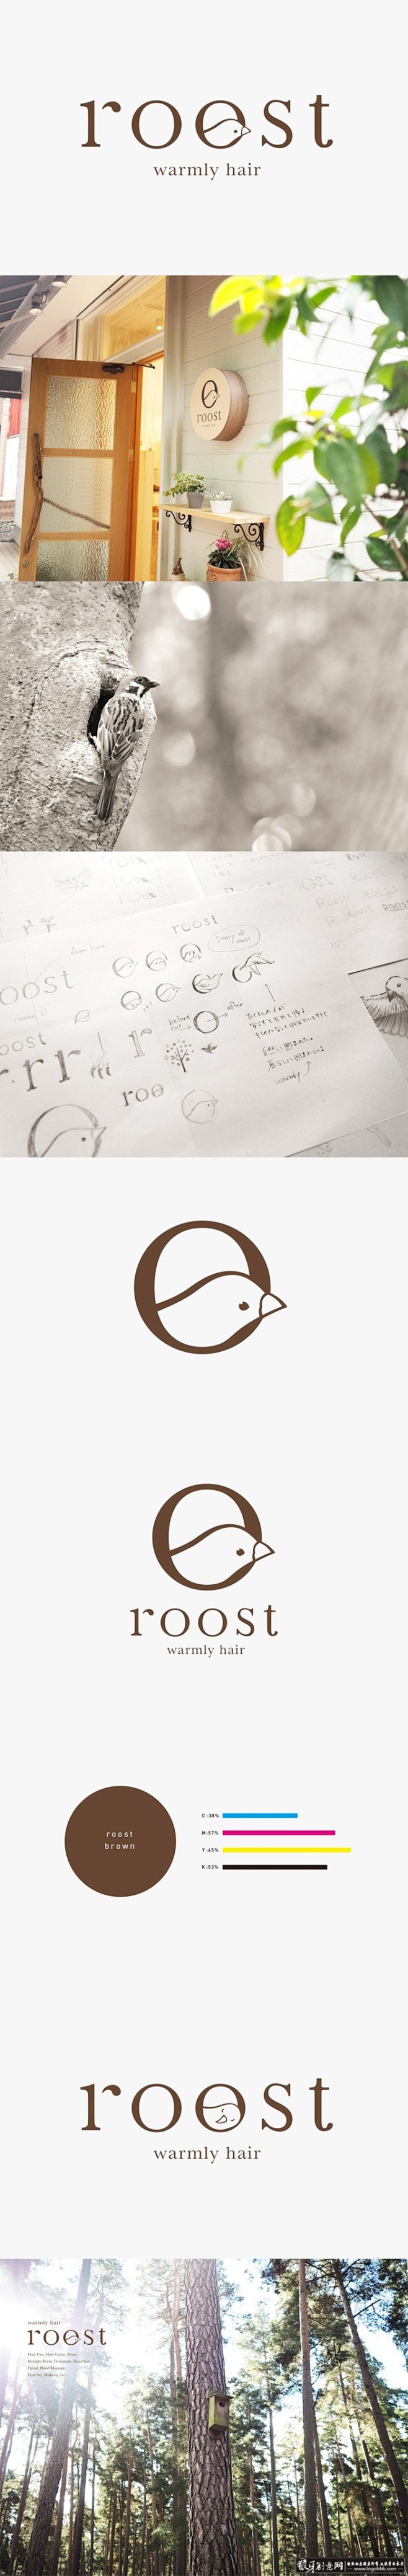 VI品牌设计 鸟屋品牌设计 鸟屋logo...